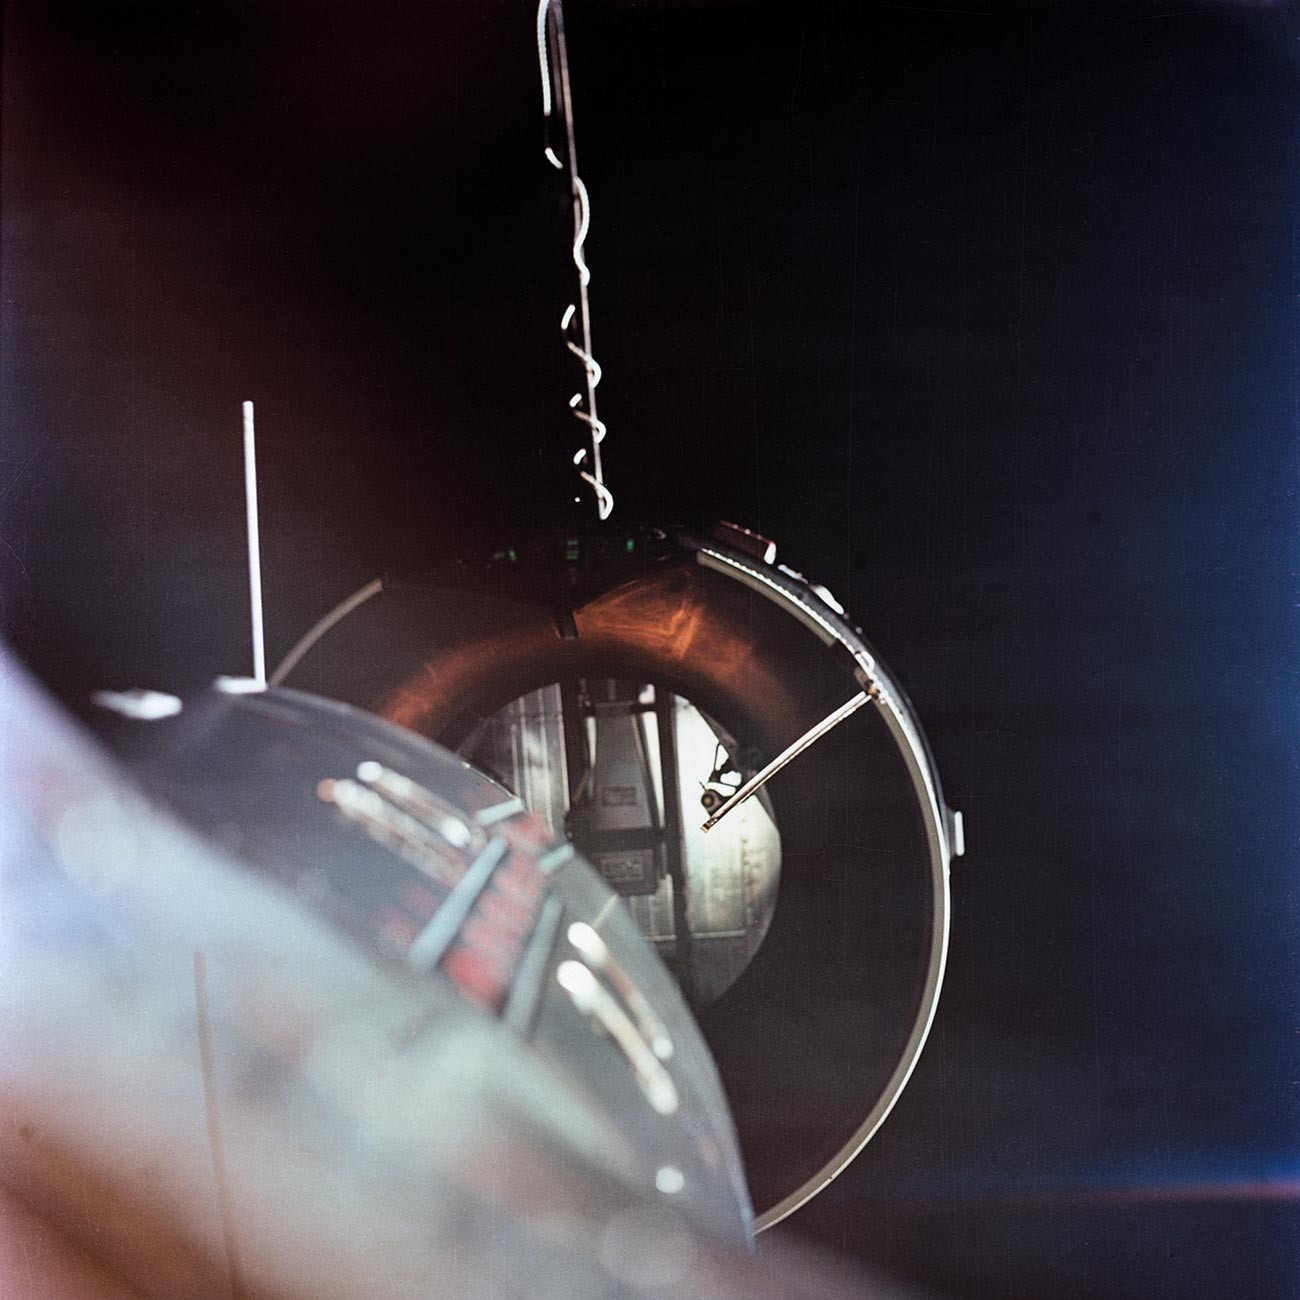 Blick auf den orbitalen Zielflugkörper Gemini Agena Target Vehicle (GATV) vom Zwillingsadapter des Gemini-Programms der Nationalen Luft- und Raumfahrtverwaltung aus, der sich etwa zwei Fuß von der Nase des Raumfahrzeugs entfernt befindet (unten links).